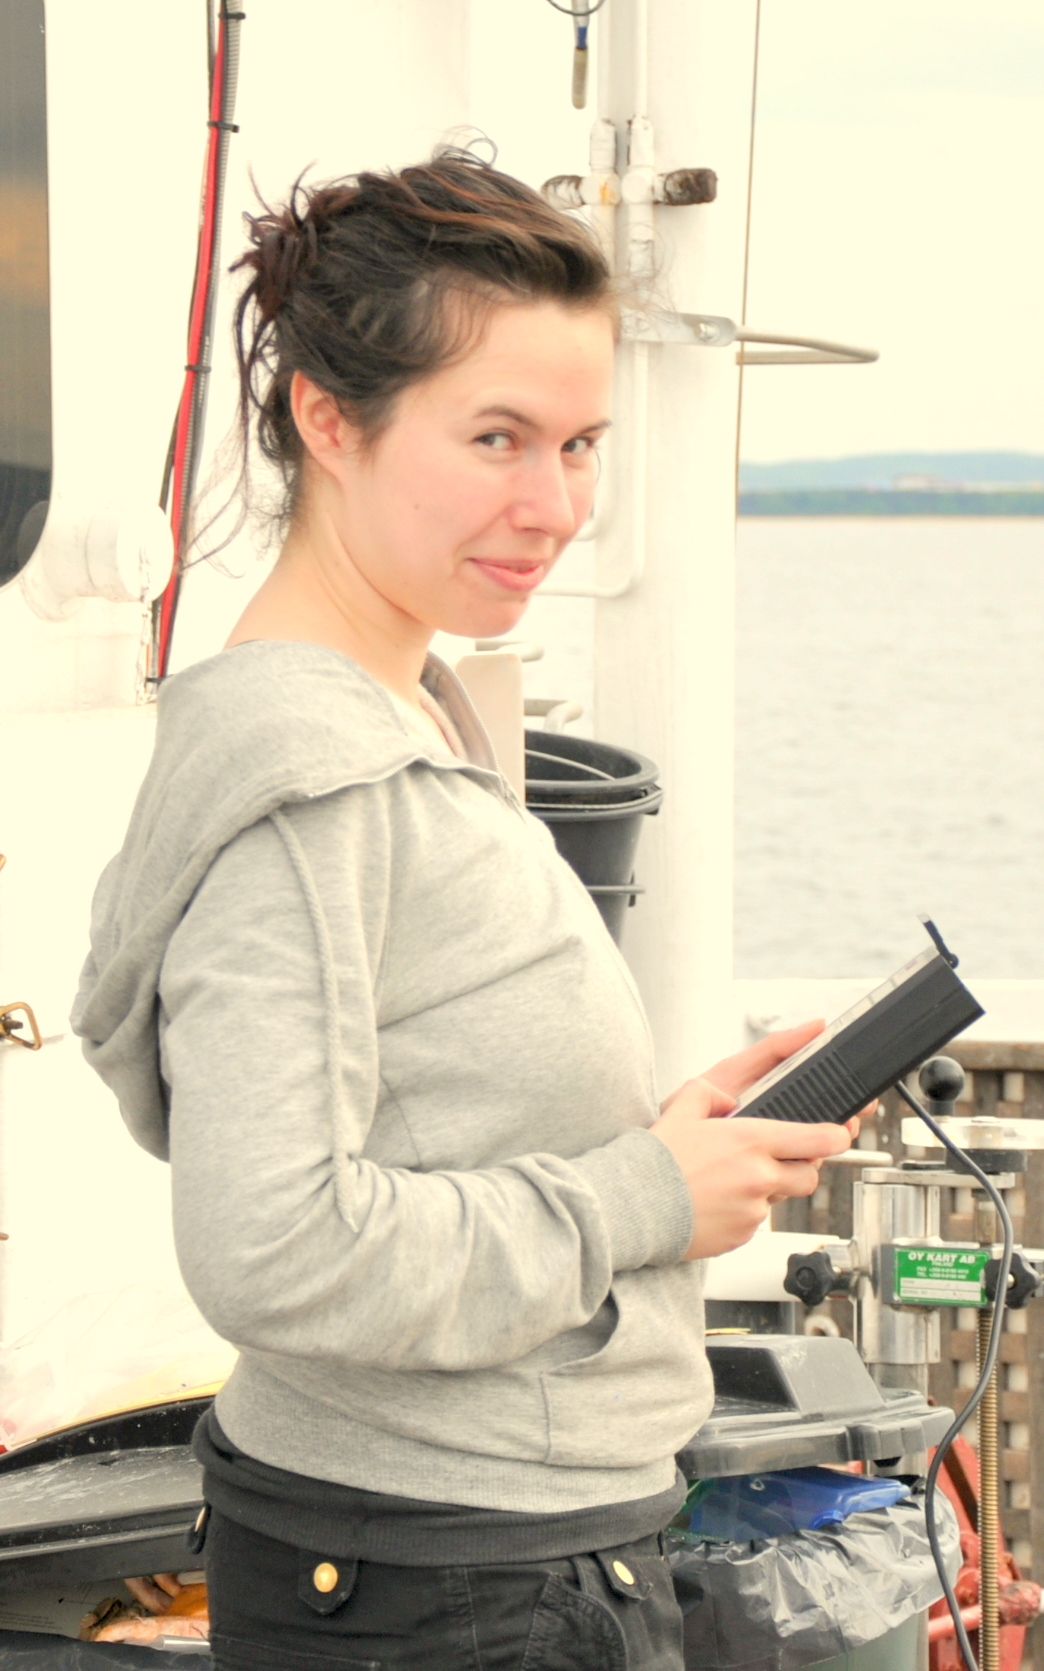 Measurements onboard: Ms. Anna Maciejewska